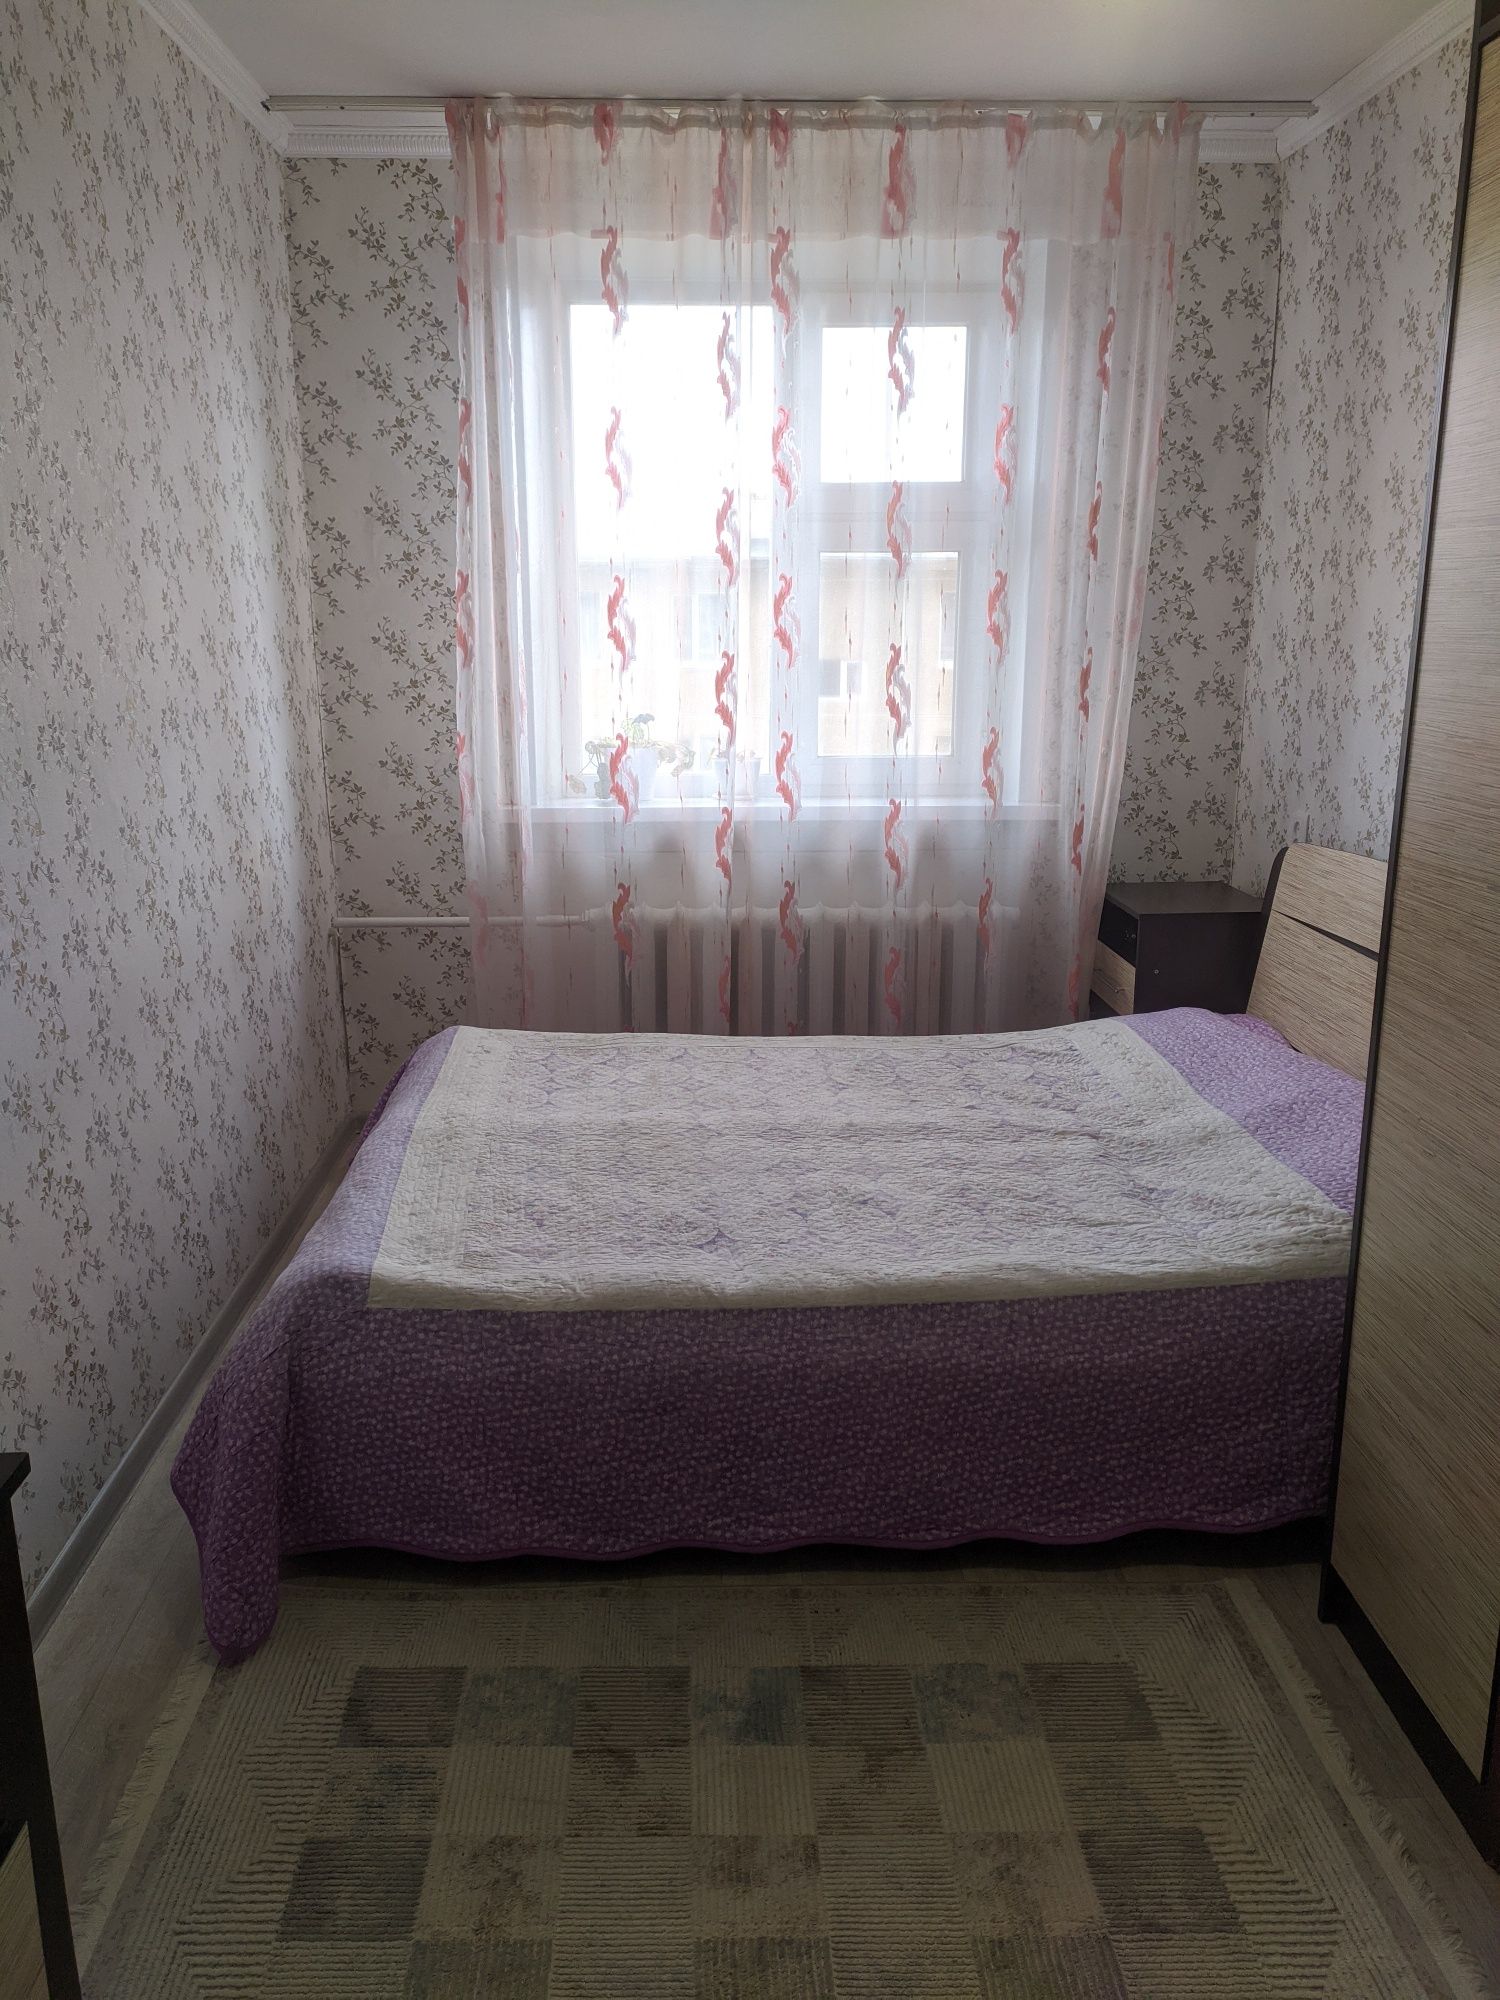 Продается 3-хкомнатная квартира в поселке Заводской.